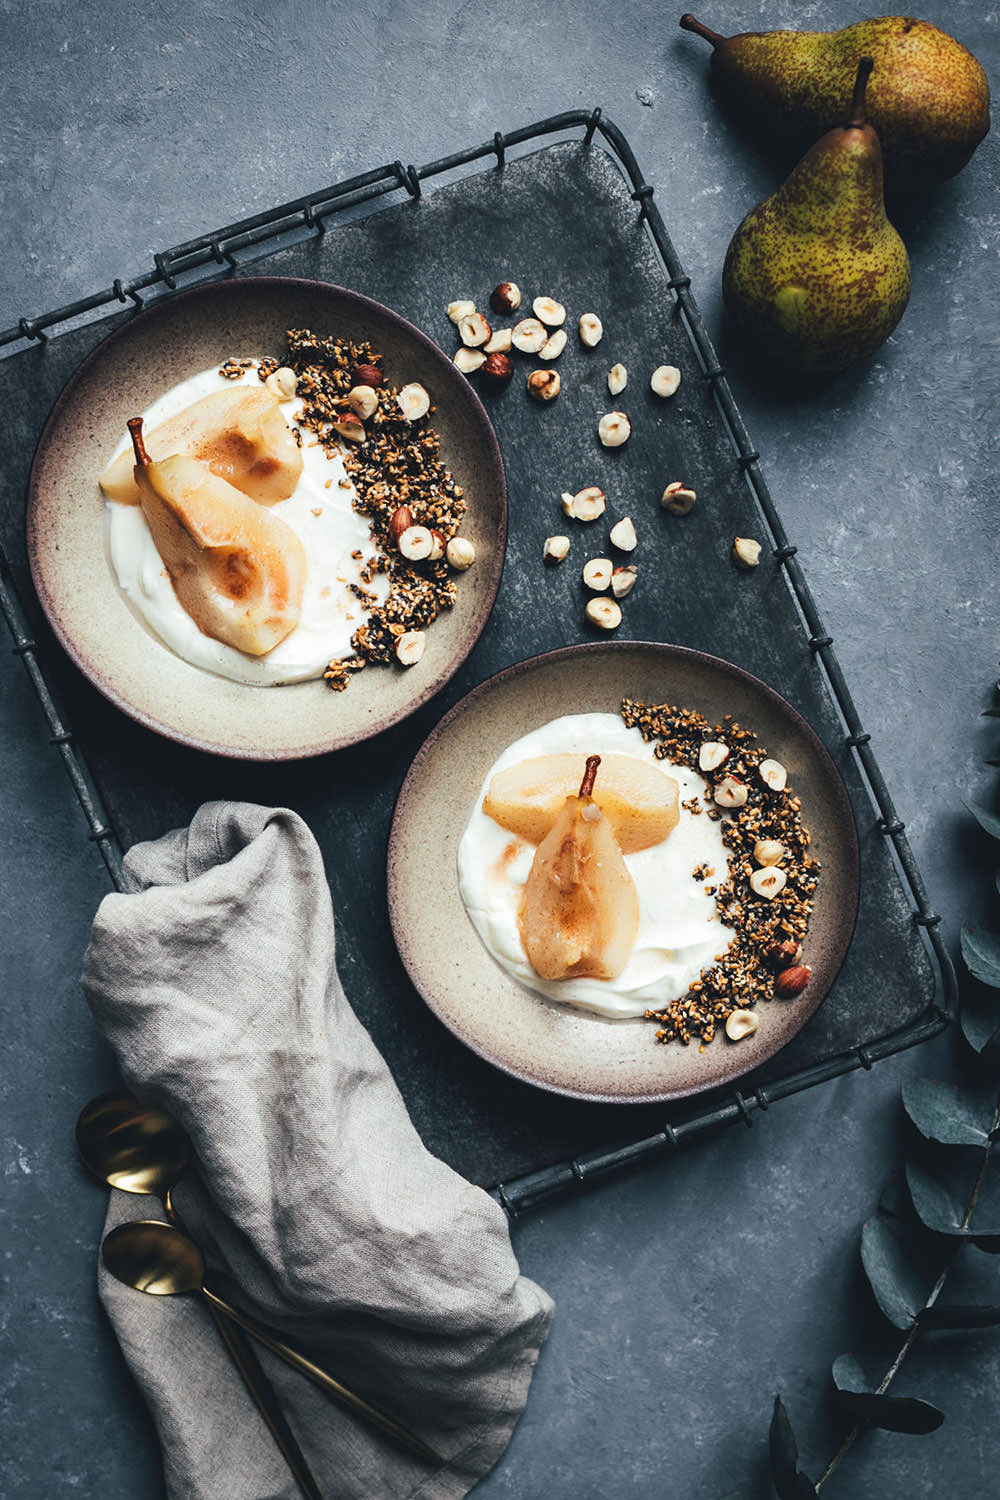 Rezept für Knusper-Granola aus Mohn, Sesam und Leinsamen – serviert mit in Honig pochierter Birne und cremigem Joghurt | Frühstücksrezept von moeyskitchen.com #granola #knuspergranola #knuspermüsli #müsli #frühstück #frühstücksrezept #frühstücksbowl #birnen #joghurt #winterfrühstück #rezepte #foodblogger